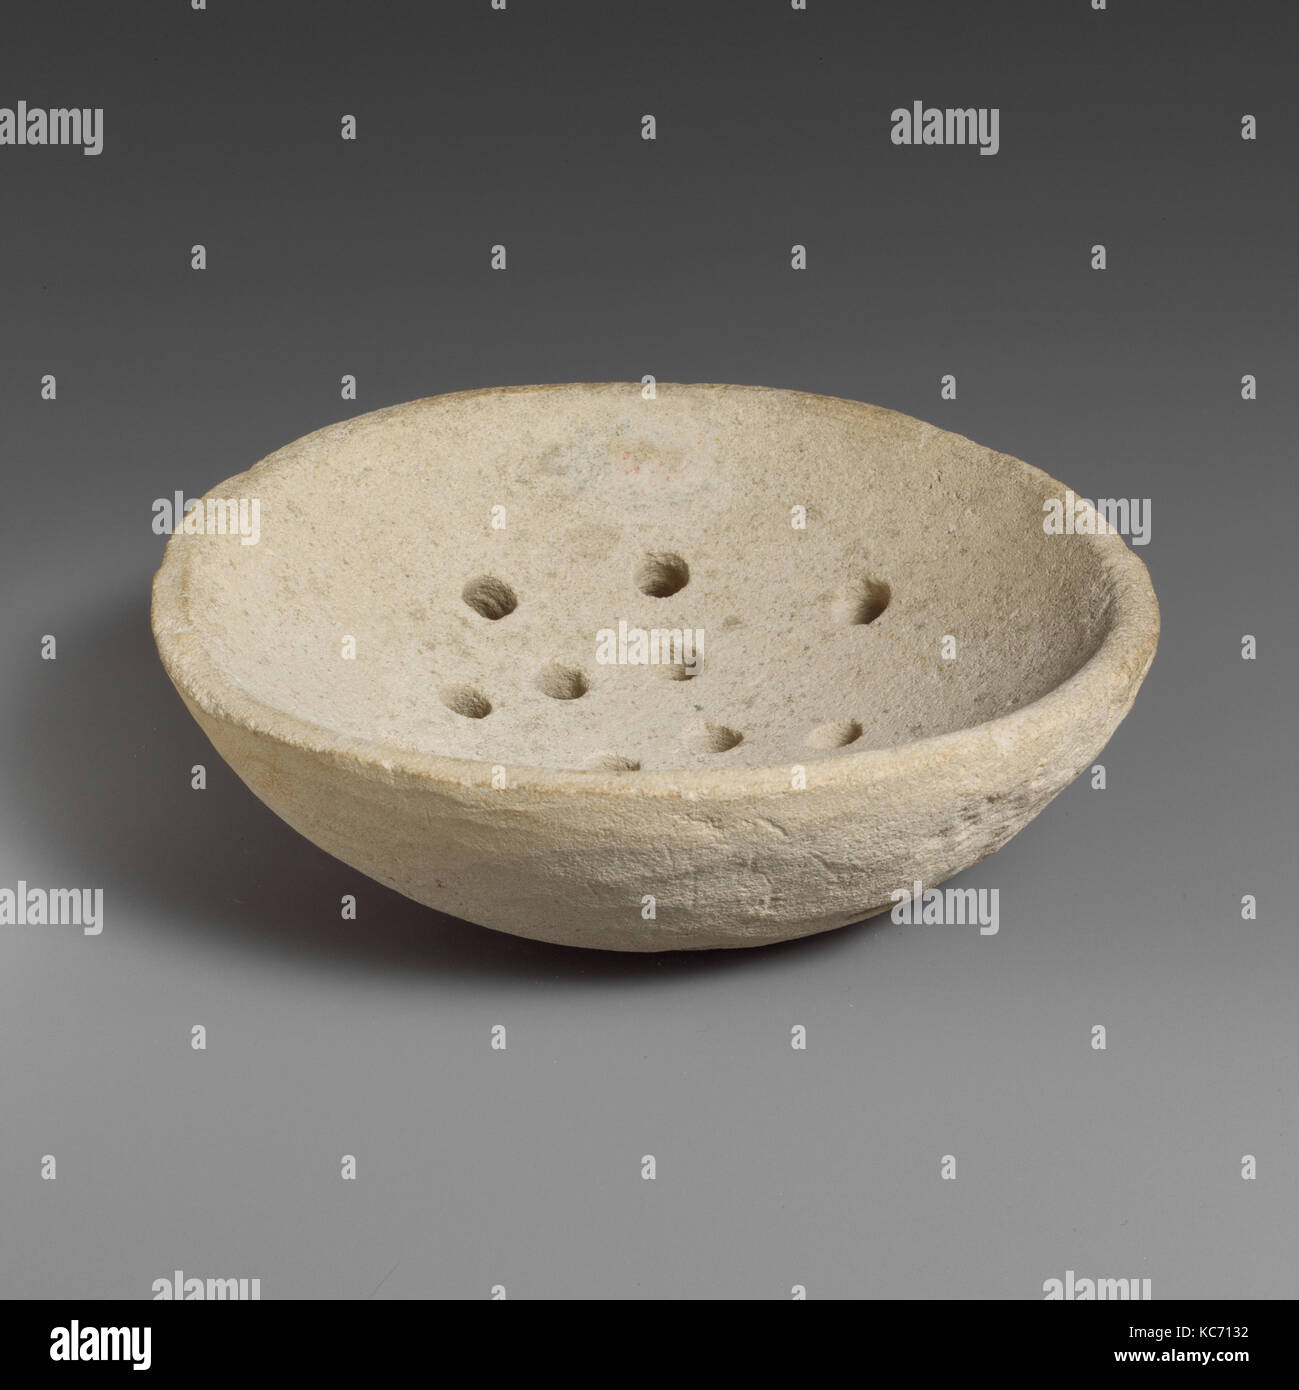 Crépine de calcaire, chypriote, calcaire, H. : 1/4 in. (3,2 cm) ; Diam. 3 1/4 in. (8,3 cm), Miscellaneous-Stone, la crépine Banque D'Images